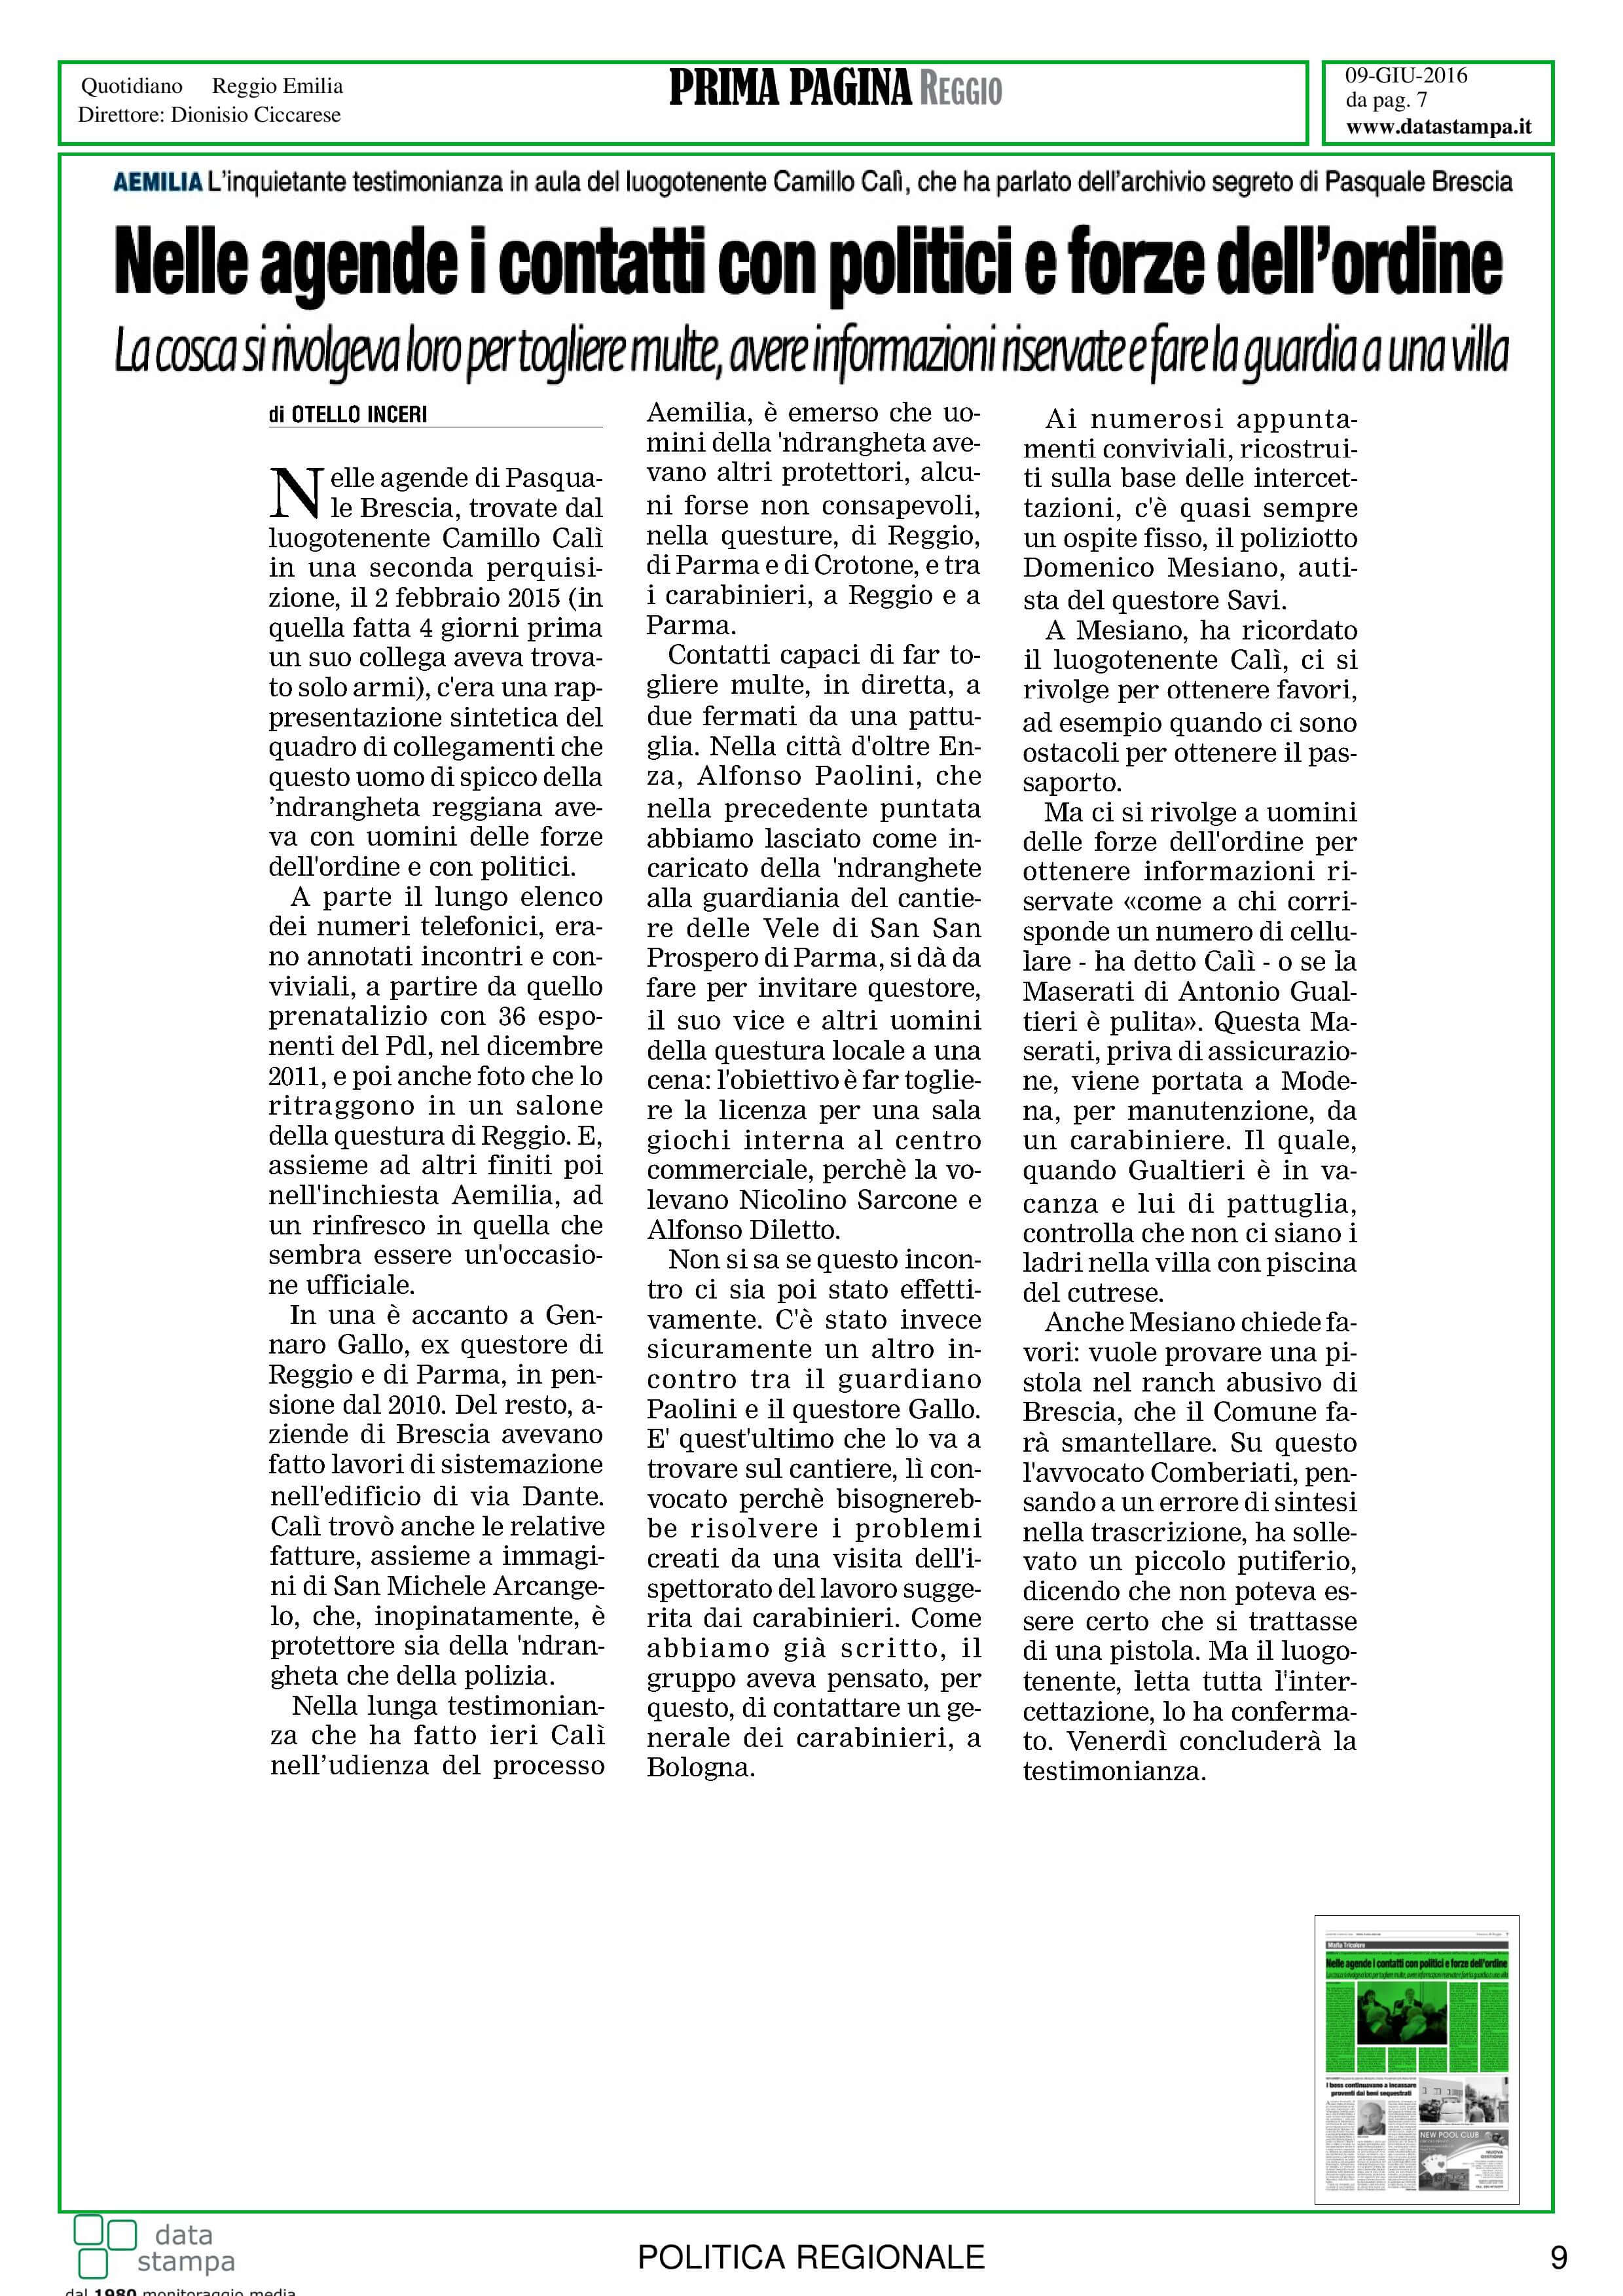 mafia-legalita-in-er-9-10-giugno-page-010